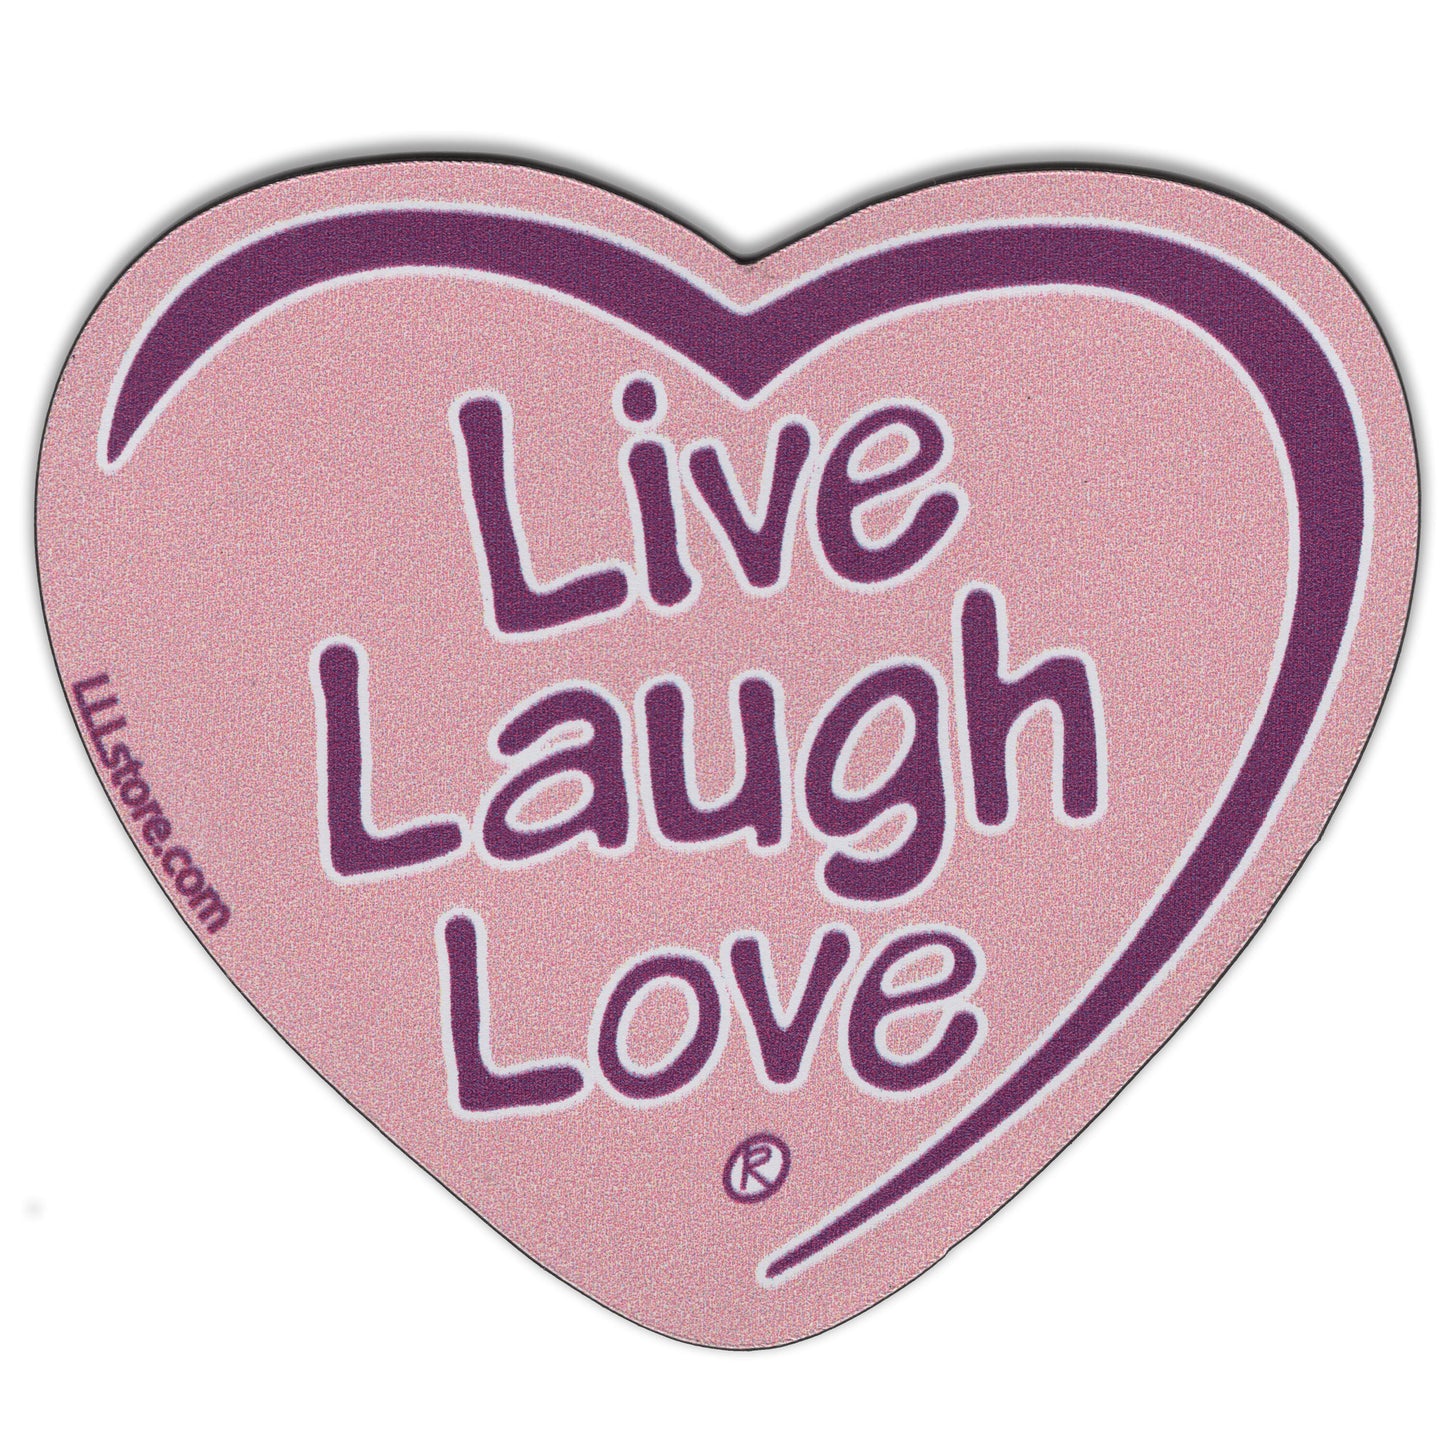 Live Laugh Love® Decorative Heart Shape Message Magnet - Purple on pink